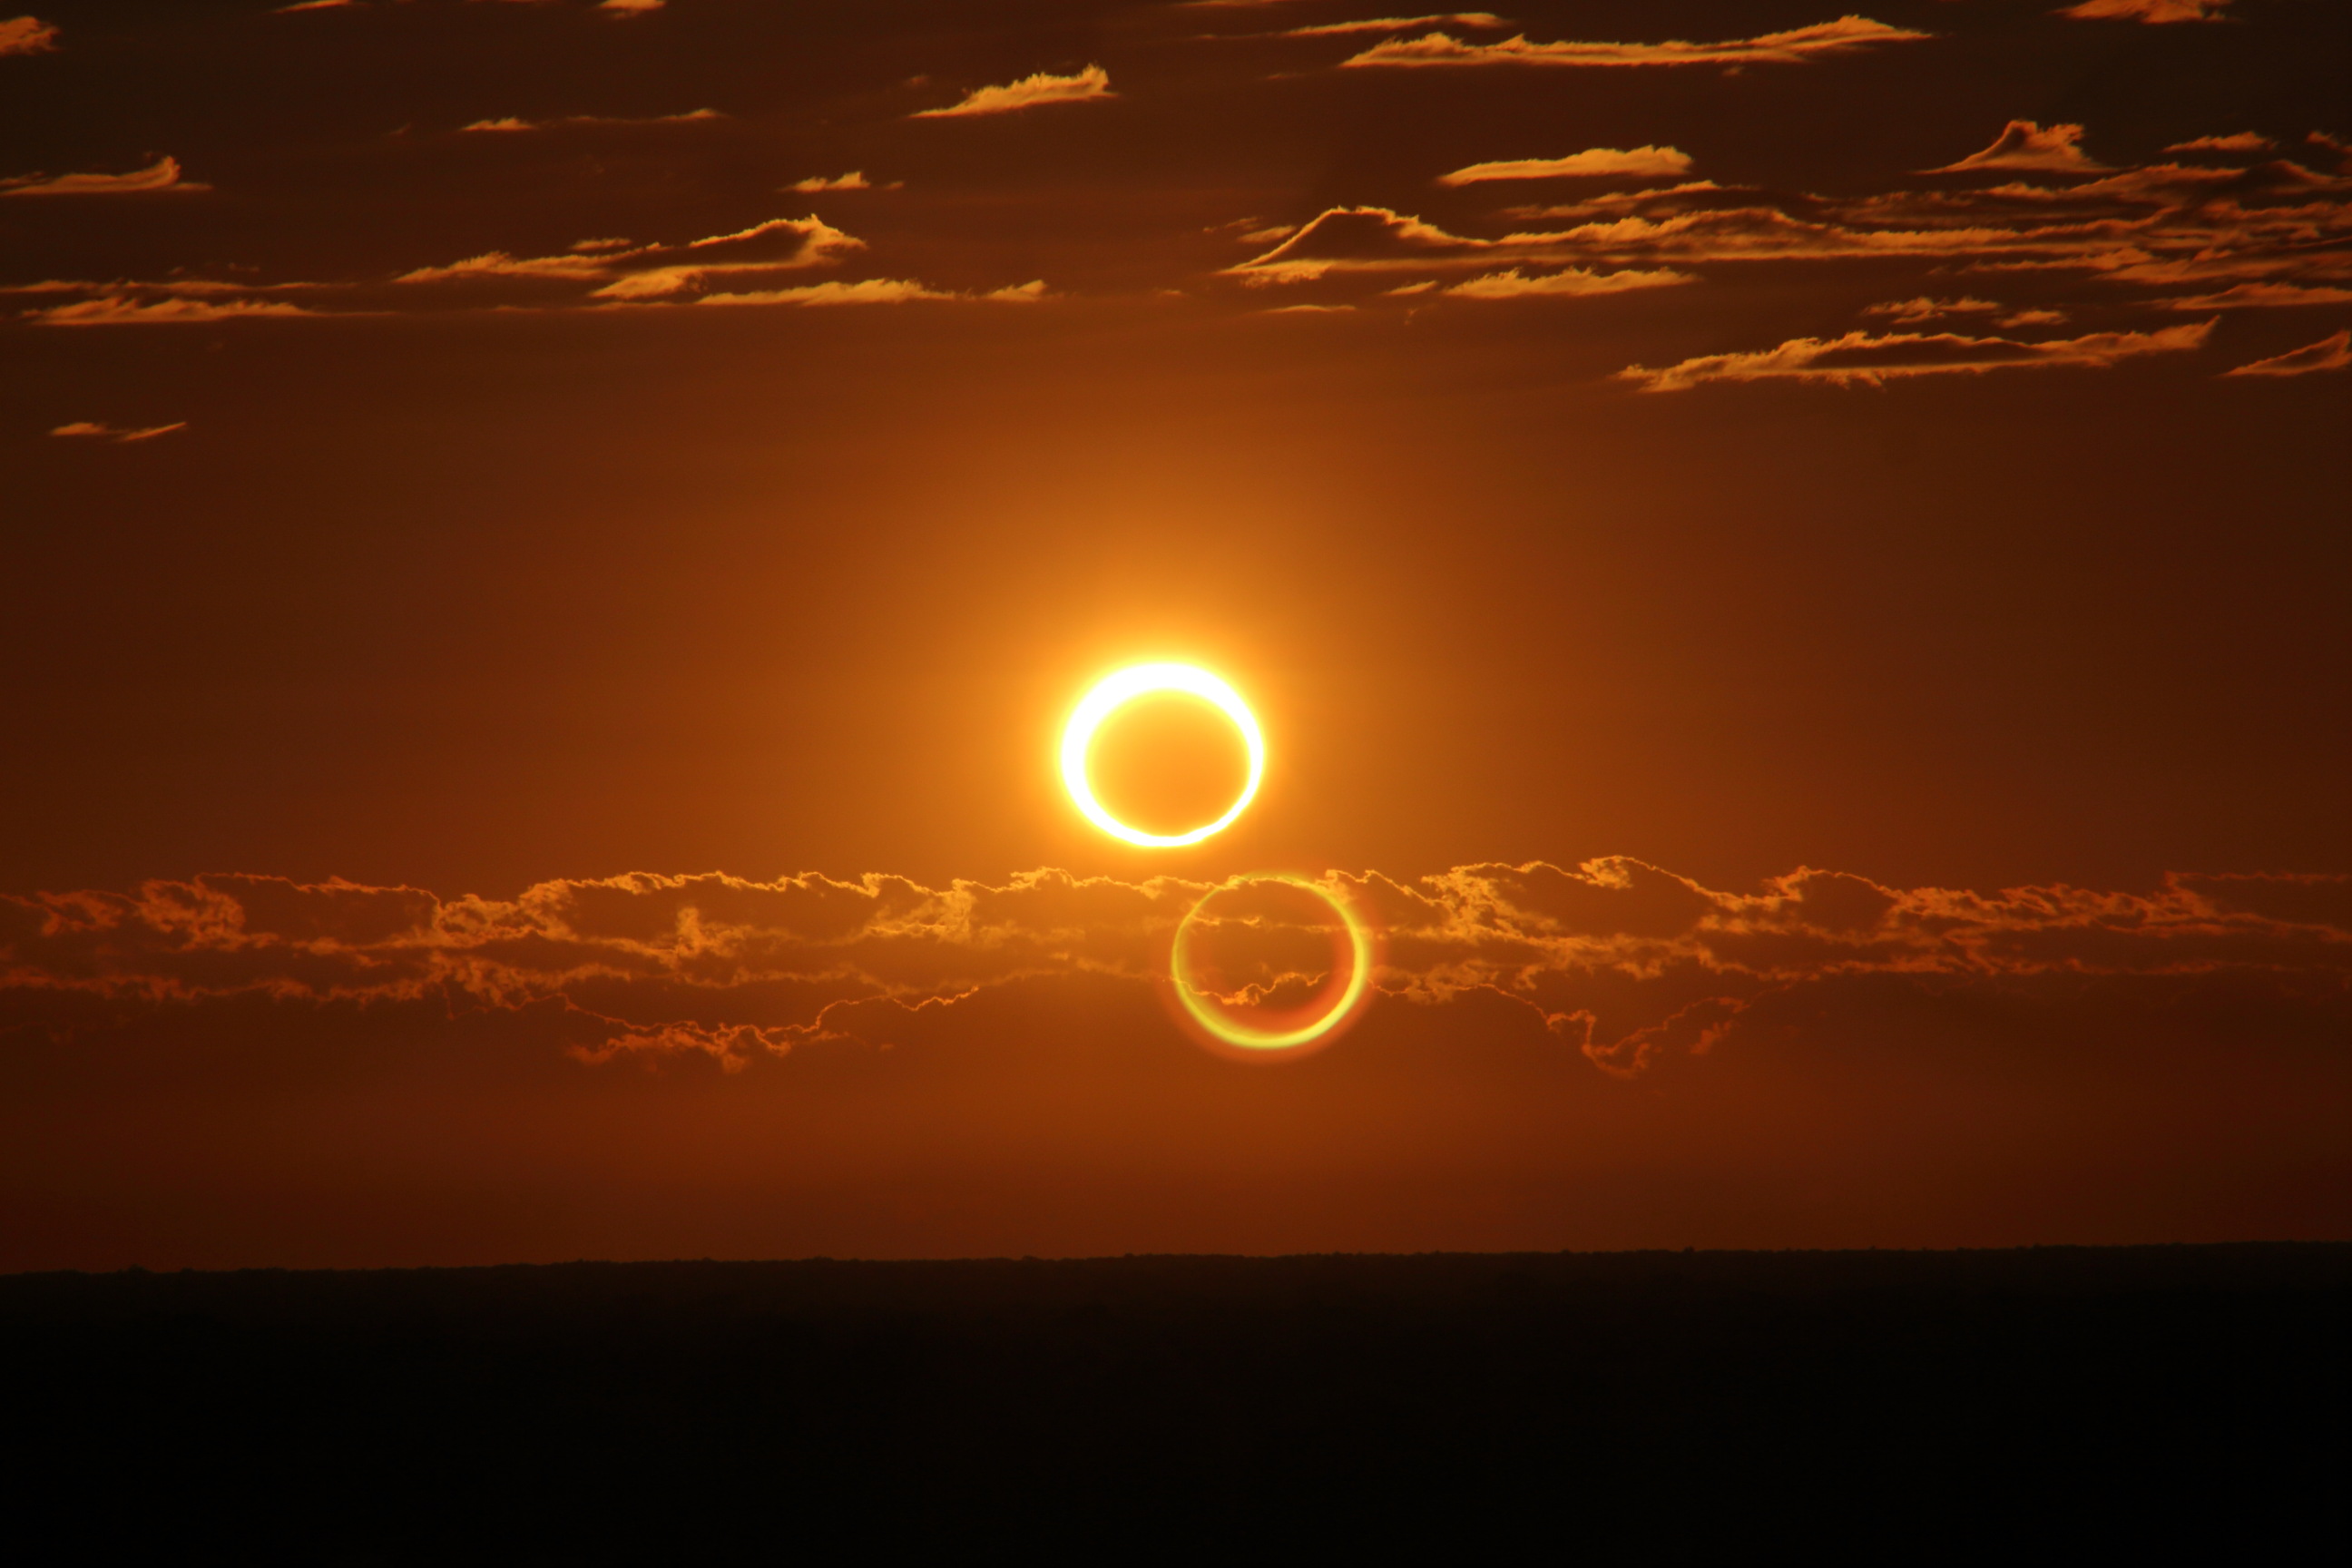 Un espectacular eclipse solar anular ocurrió este jueves en el primer amanecer del mes, cautivando varios lugares del mundo